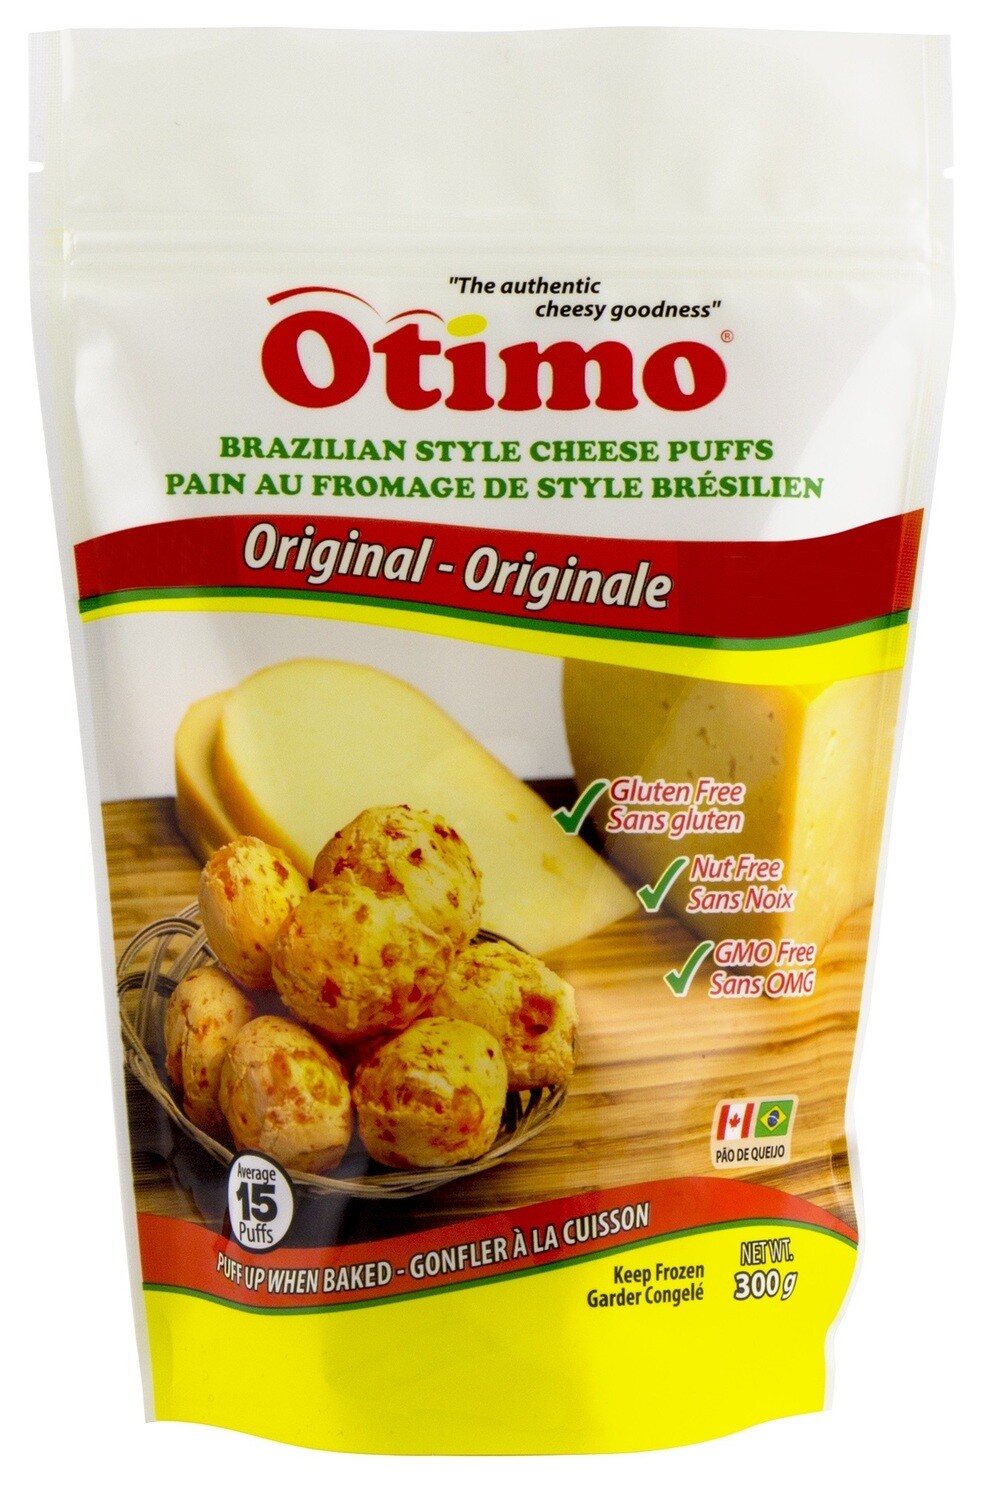 Original Brazilian Style Cheese Puffs